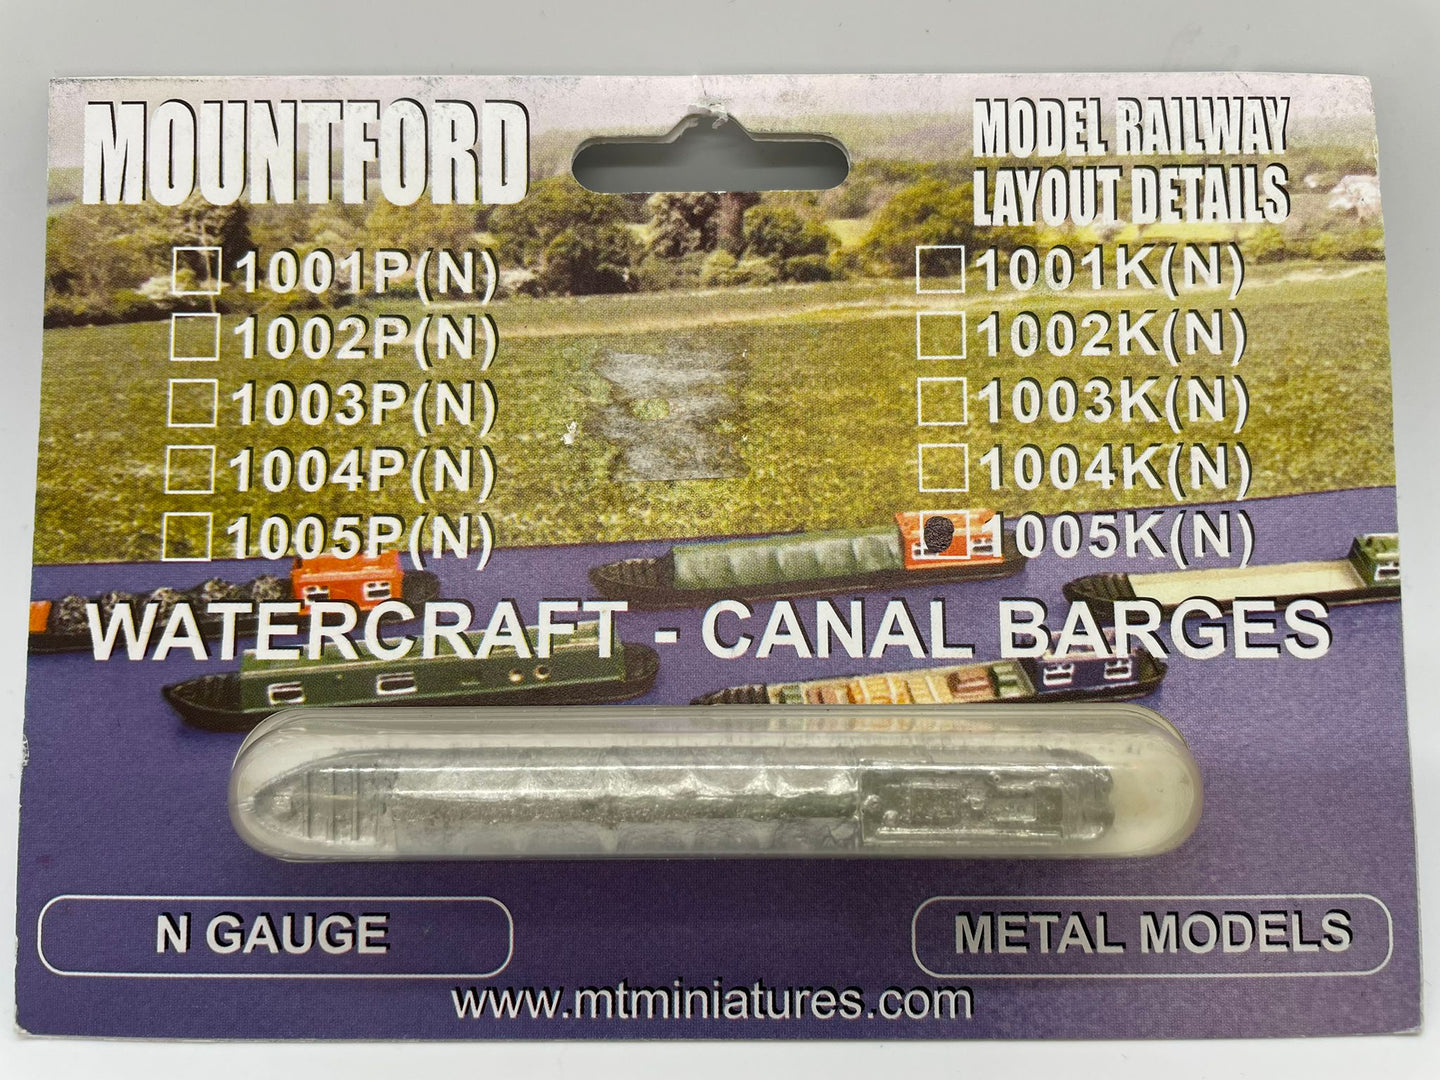 1005K - Mountford, Watercraft - Canal Barges (N)